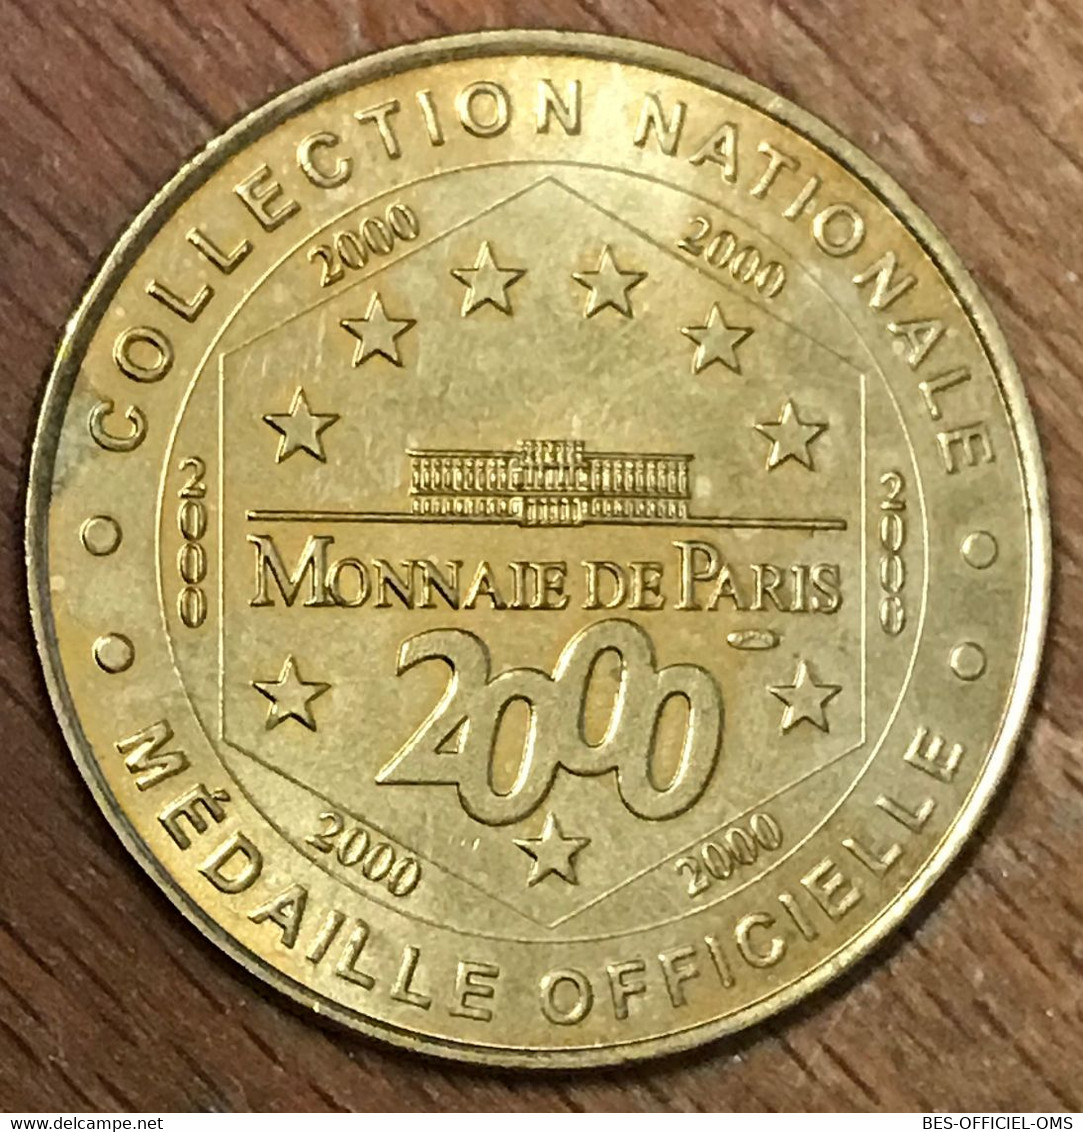 85 PUY DU FOU GRAND PARC MDP 2000 MÉDAILLE SOUVENIR MONNAIE DE PARIS JETON TOURISTIQUE MEDALS COINS TOKENS - 2000